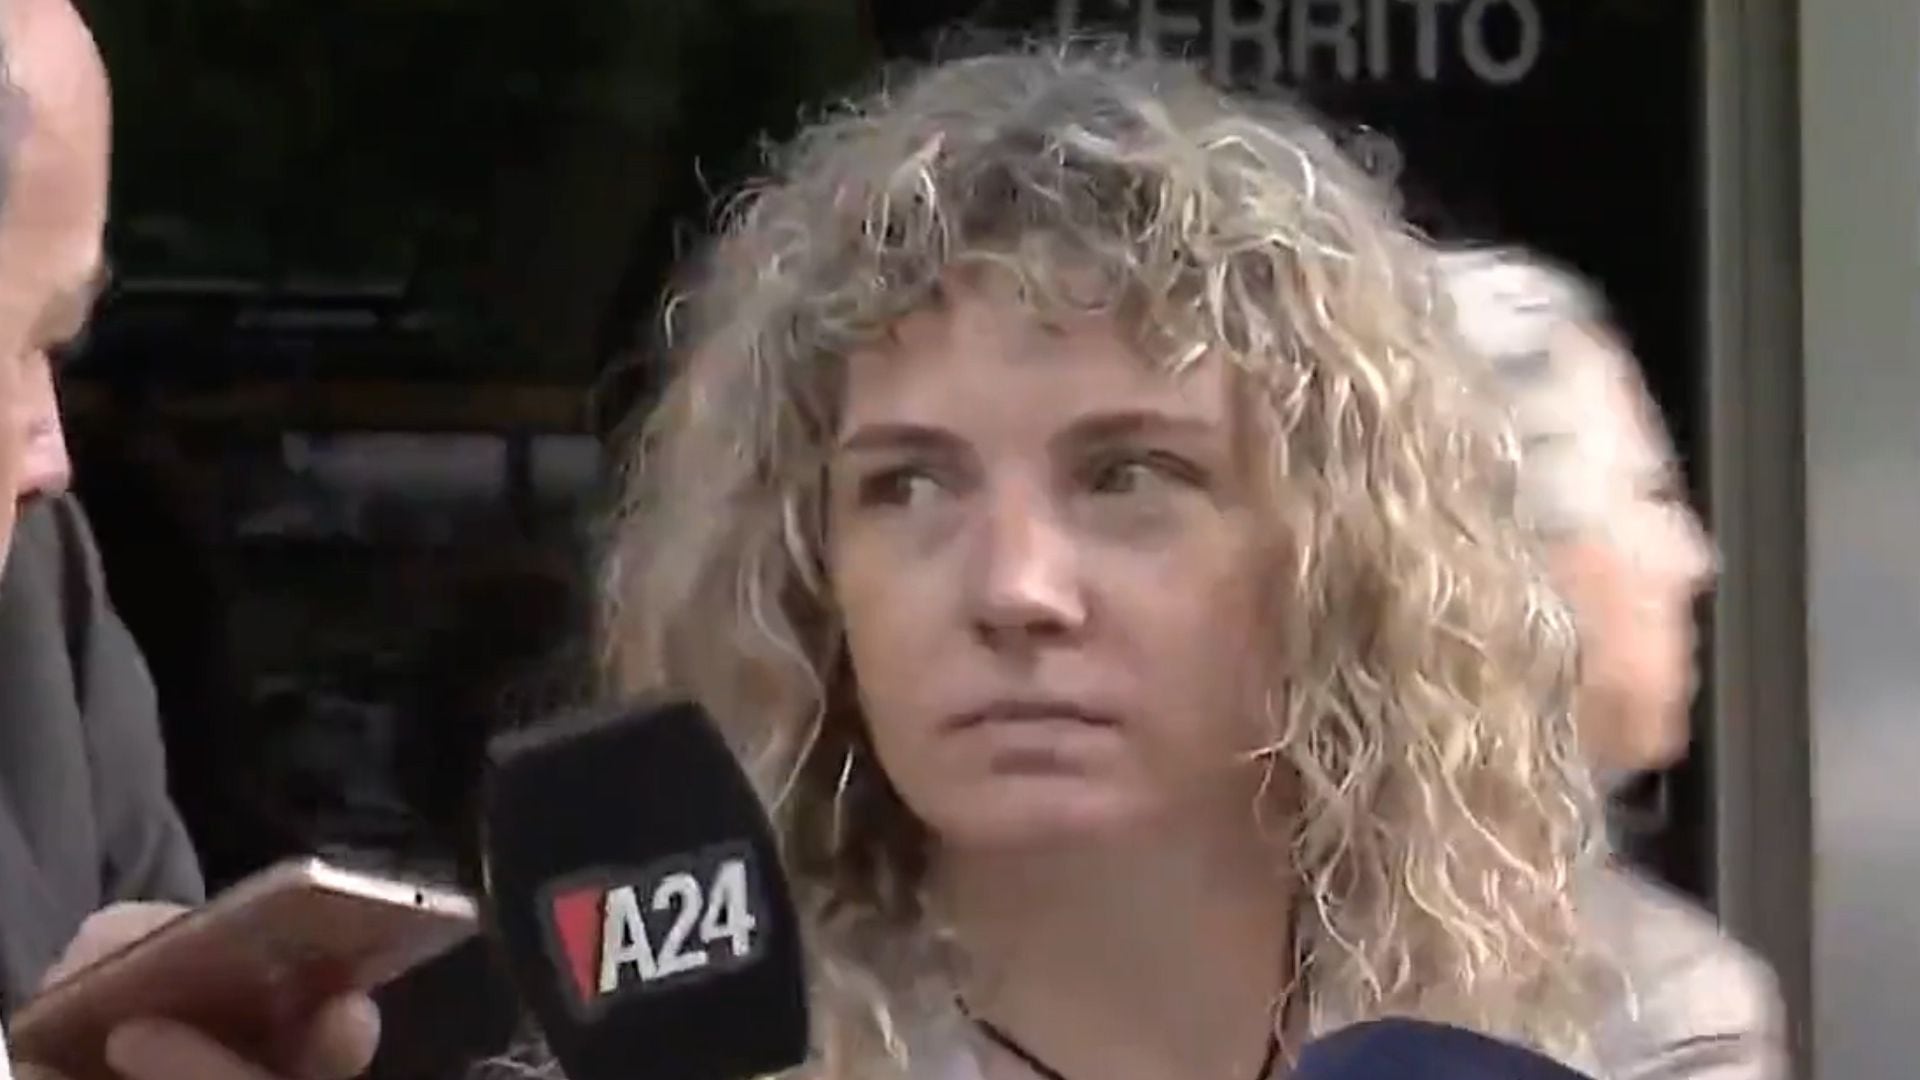 Habló Florencia Marco, que denunció a Martínez por abuso sexual en Boca